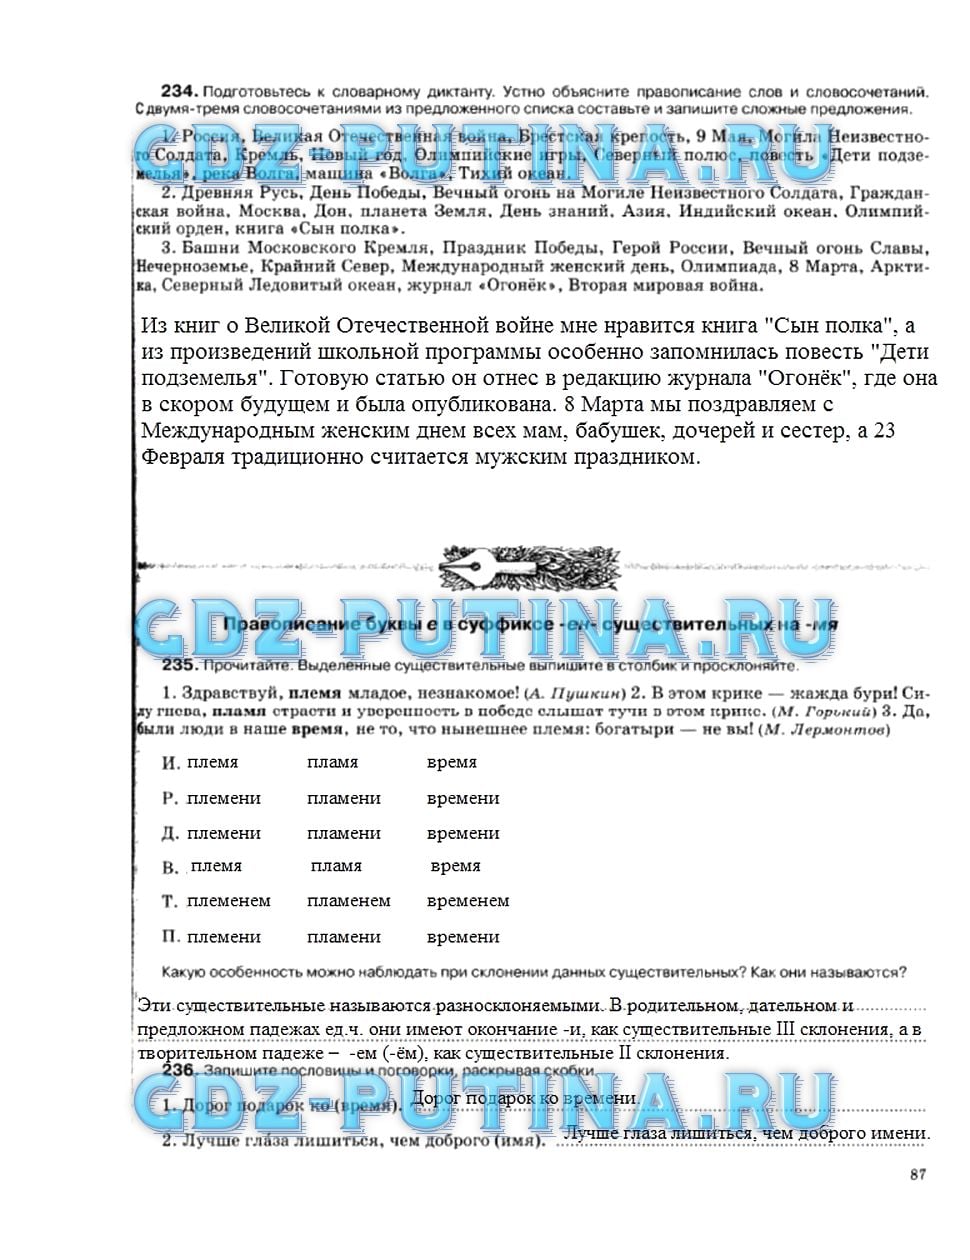 гдз 5 класс рабочая тетрадь страница 87 русский язык Ларионова